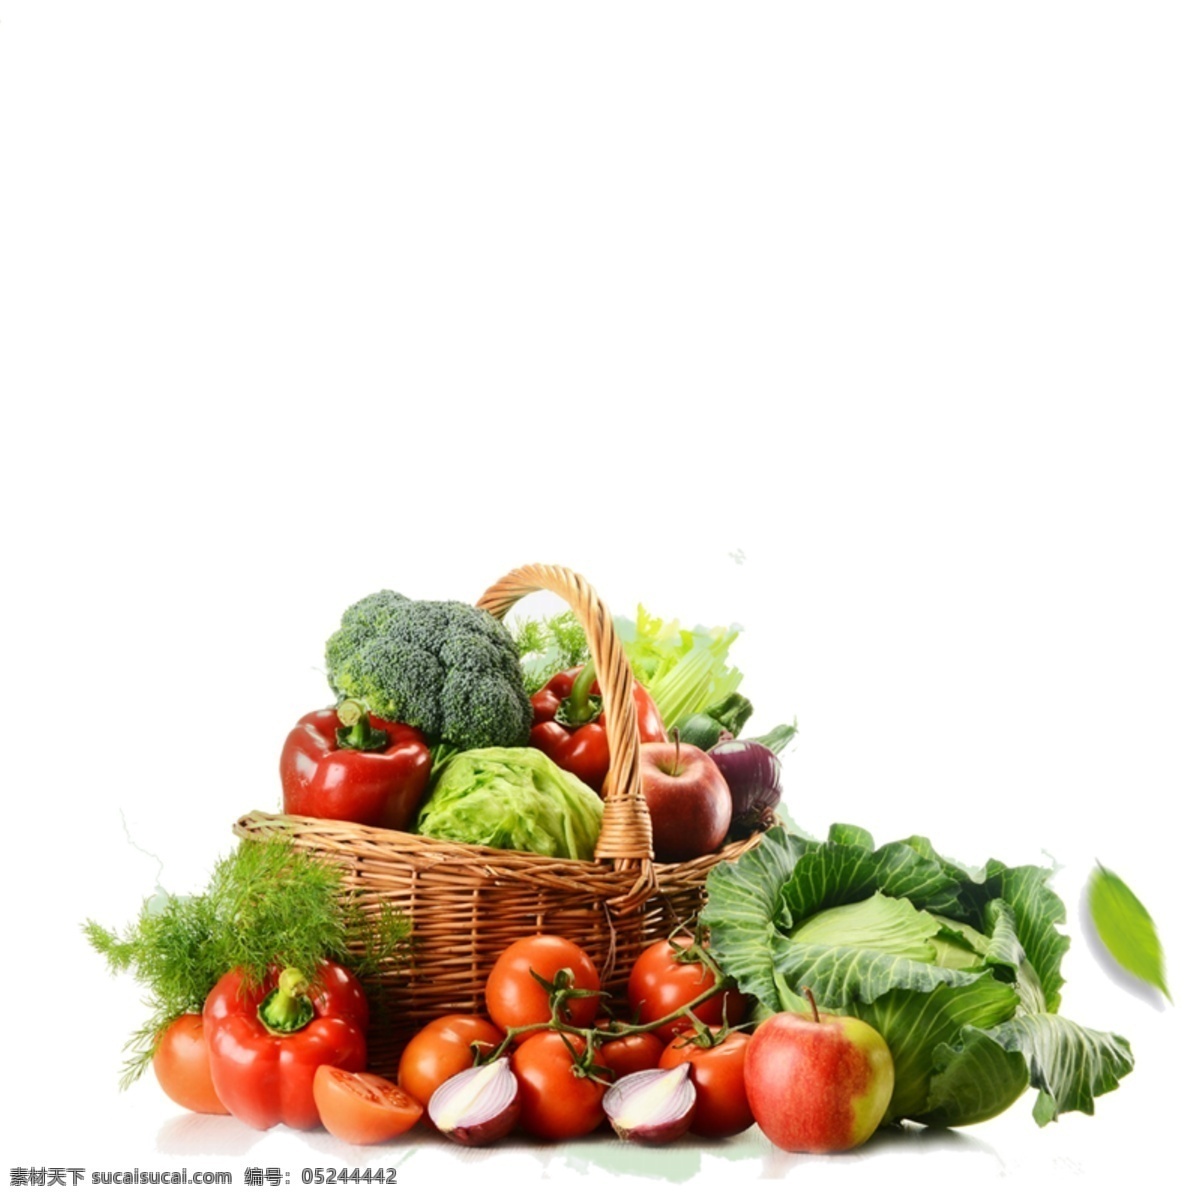 蔬菜素材 蔬菜 分层素材 蔬菜图片 蔬菜摄影 李子 萝卜 地瓜 豆角 蘑菇 南瓜